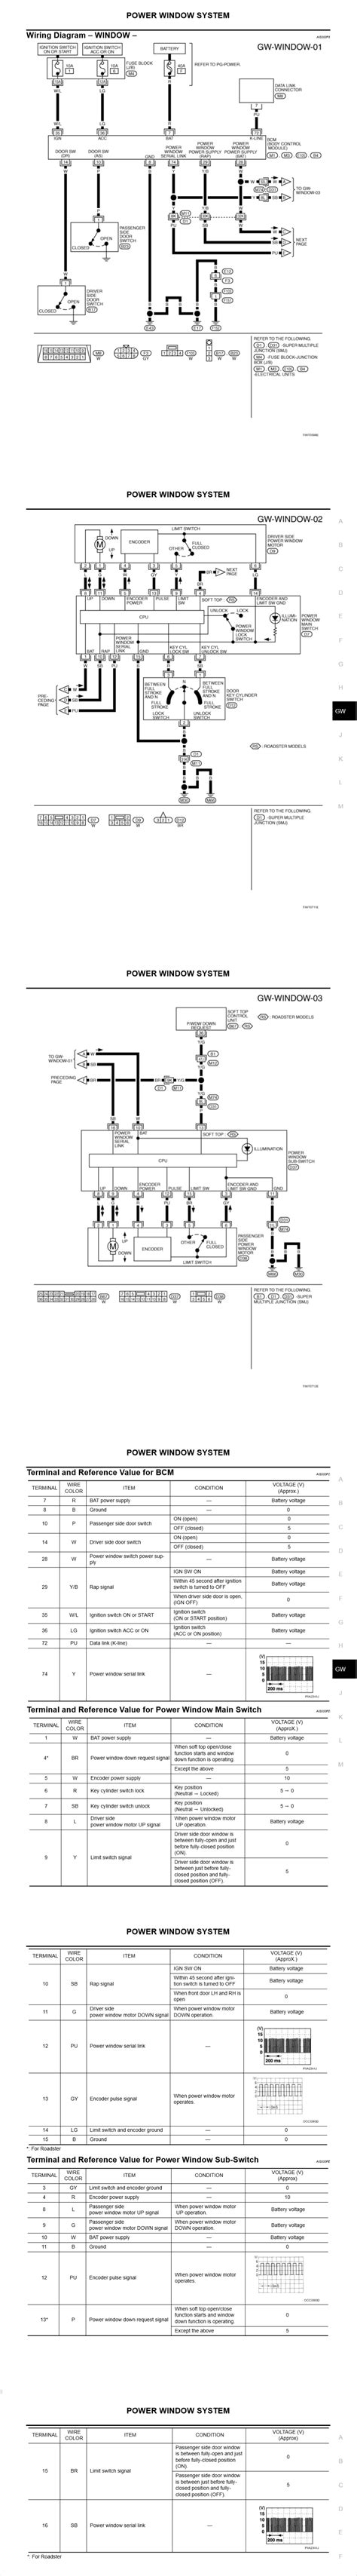 wiring diagram   power window switch  wires      plug